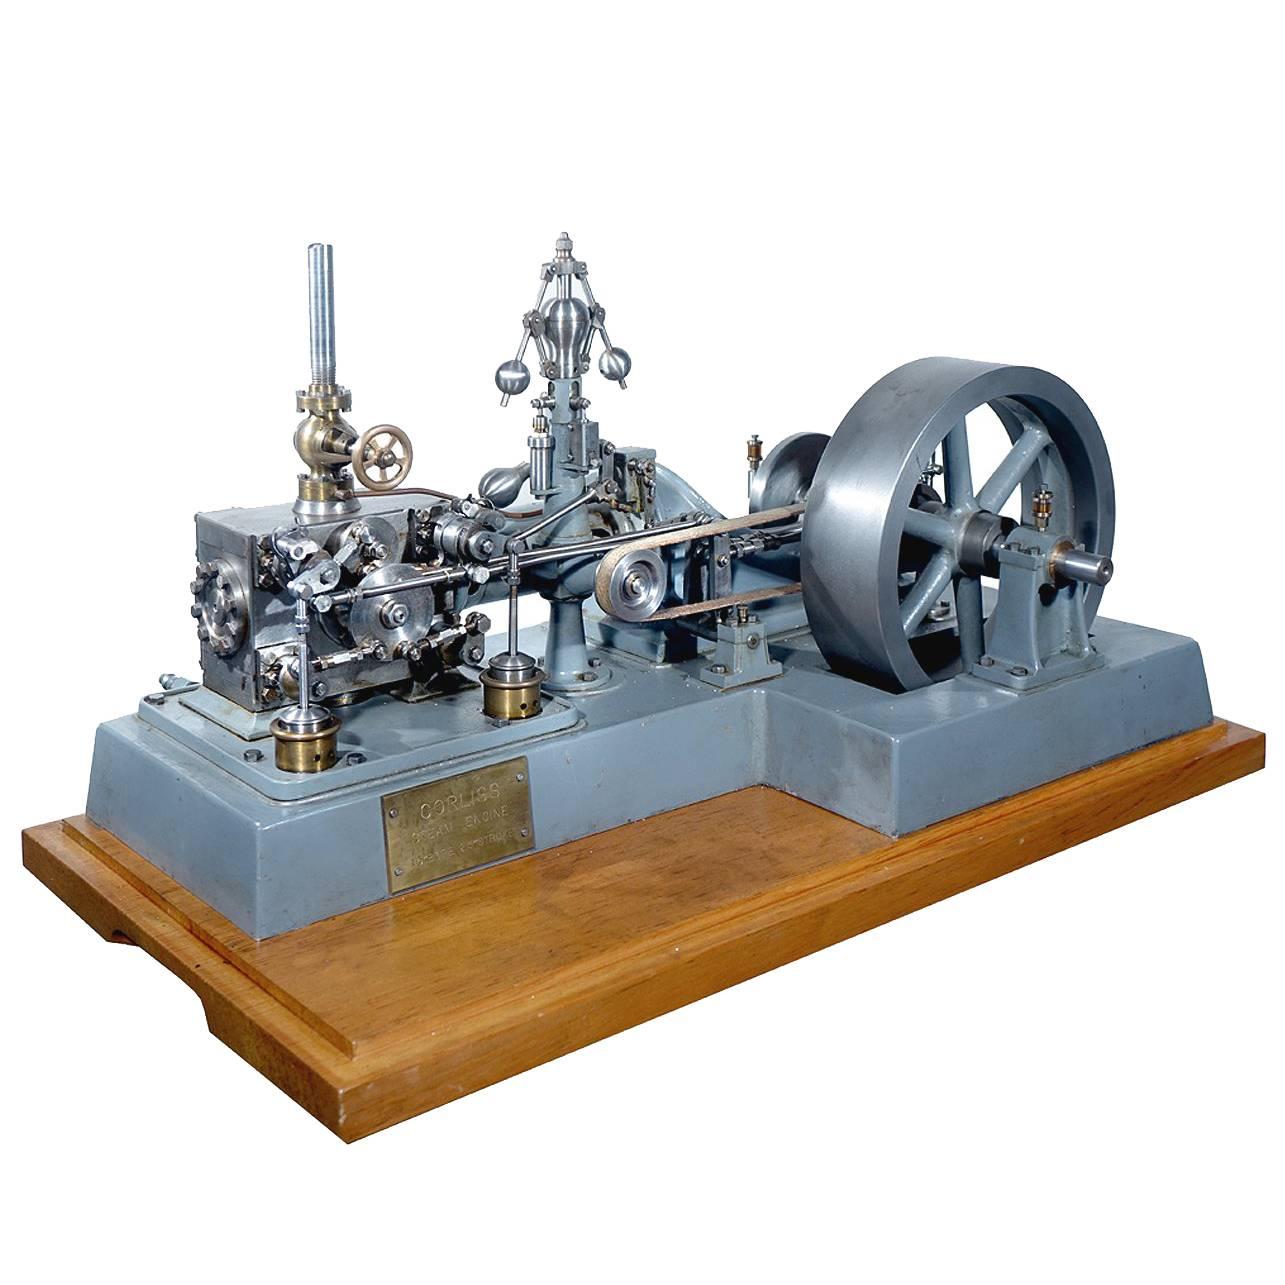 Komplexes funktionierendes Corliss-Dampfmaschinenmodell